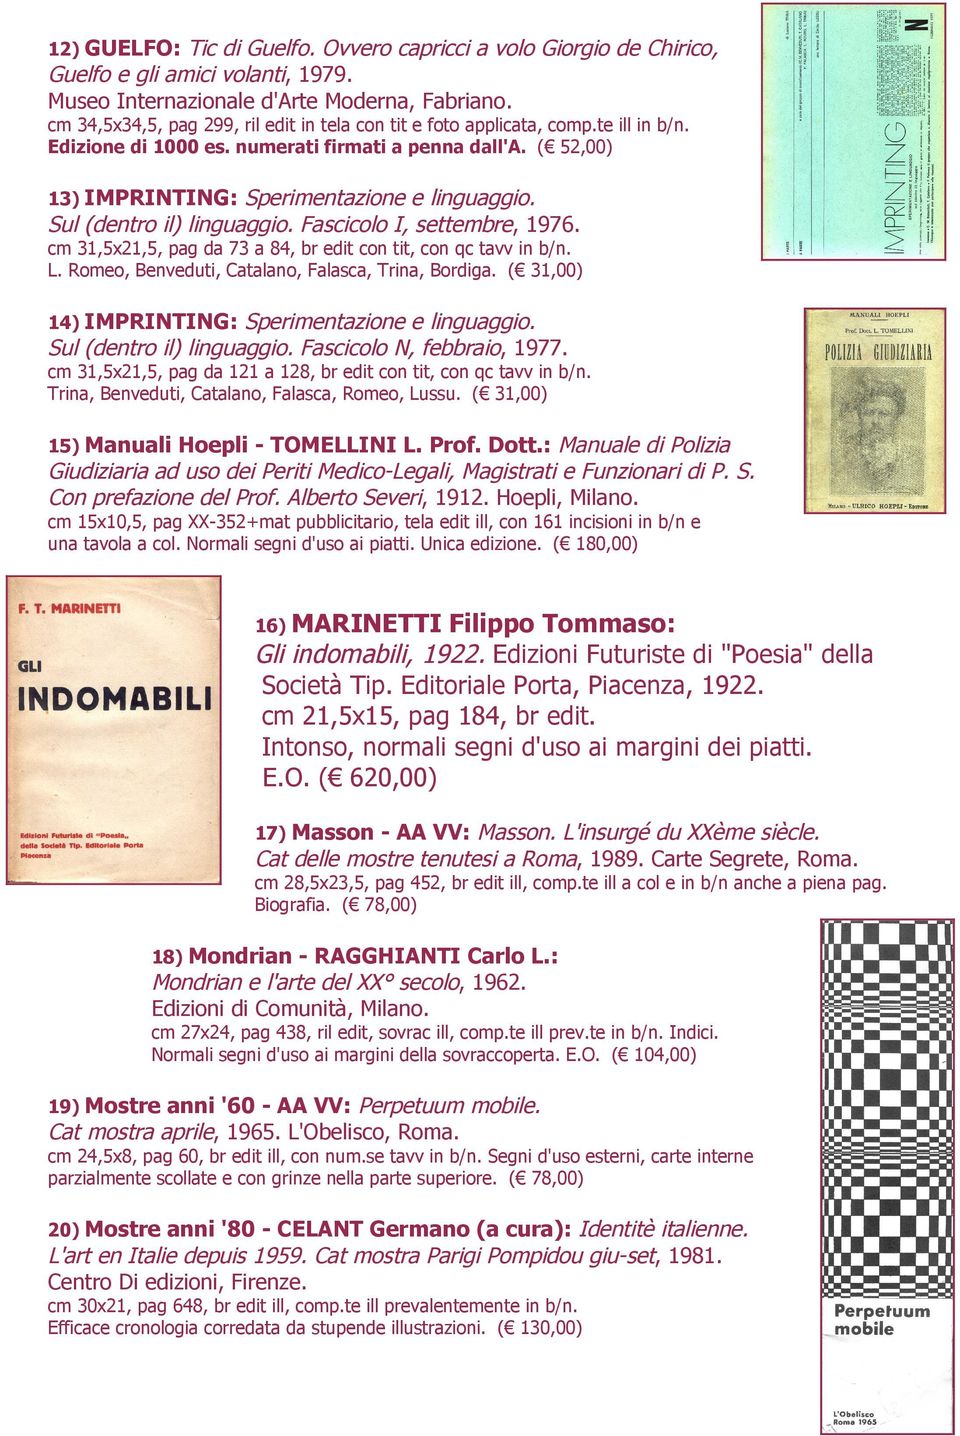 Sul (dentro il) linguaggio. Fascicolo I, settembre, 1976. 13) IMPRINTING: cm 31,5x21,5, pag da 73 a 84, br edit con tit, con qc tavv in b/n. L. Romeo, Benveduti, Catalano, Falasca, Trina, Bordiga.